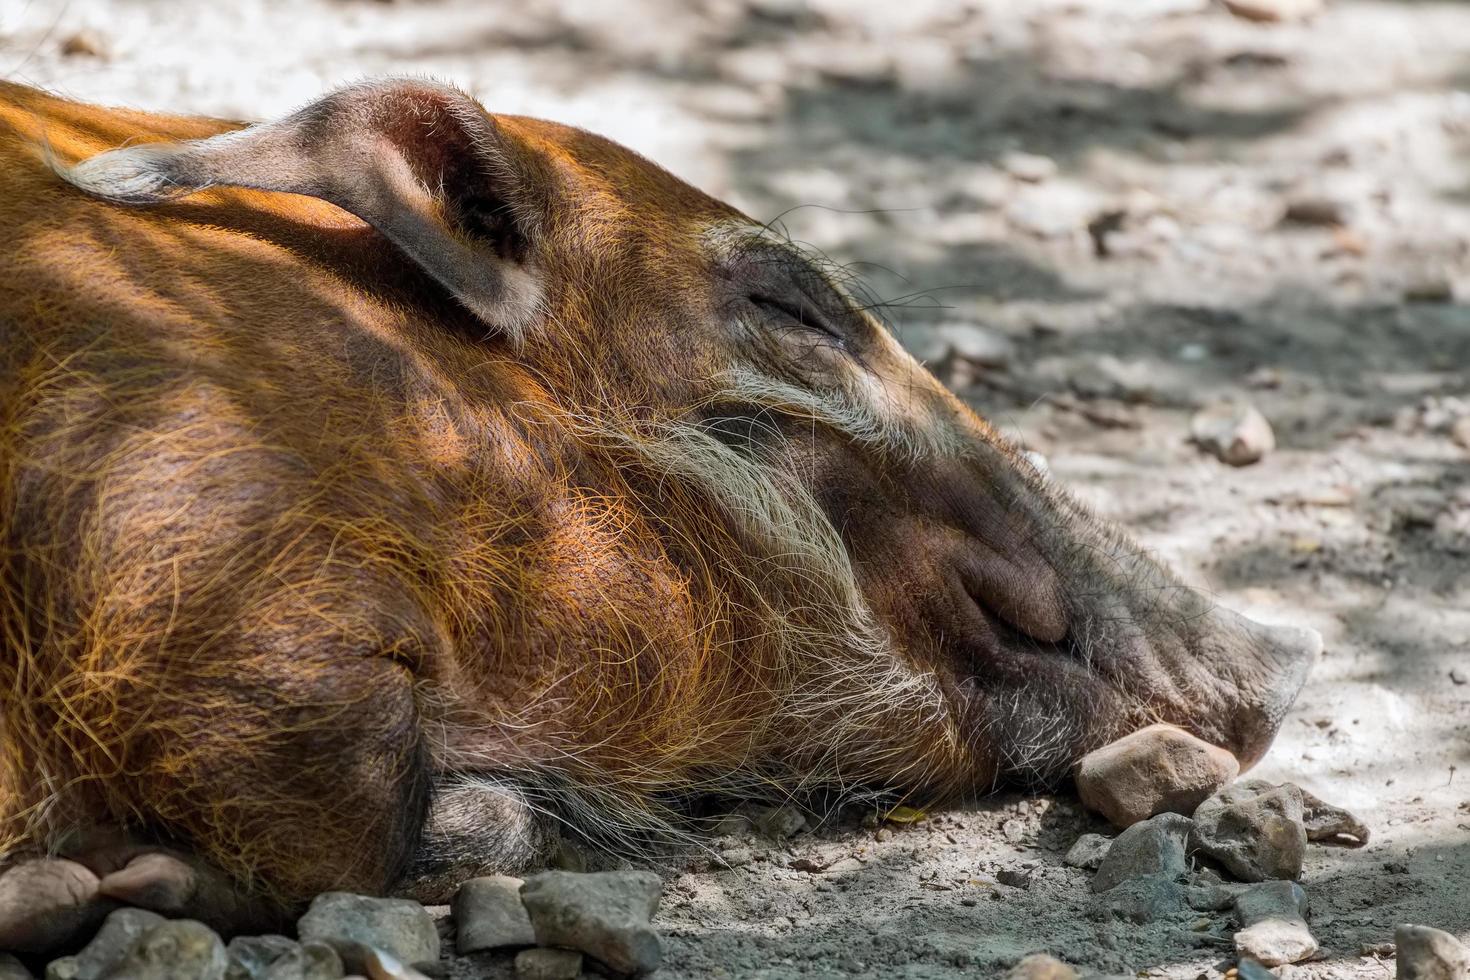 bekesbourne, kent, Storbritannien, 2014. Red River Hog sover på marken foto